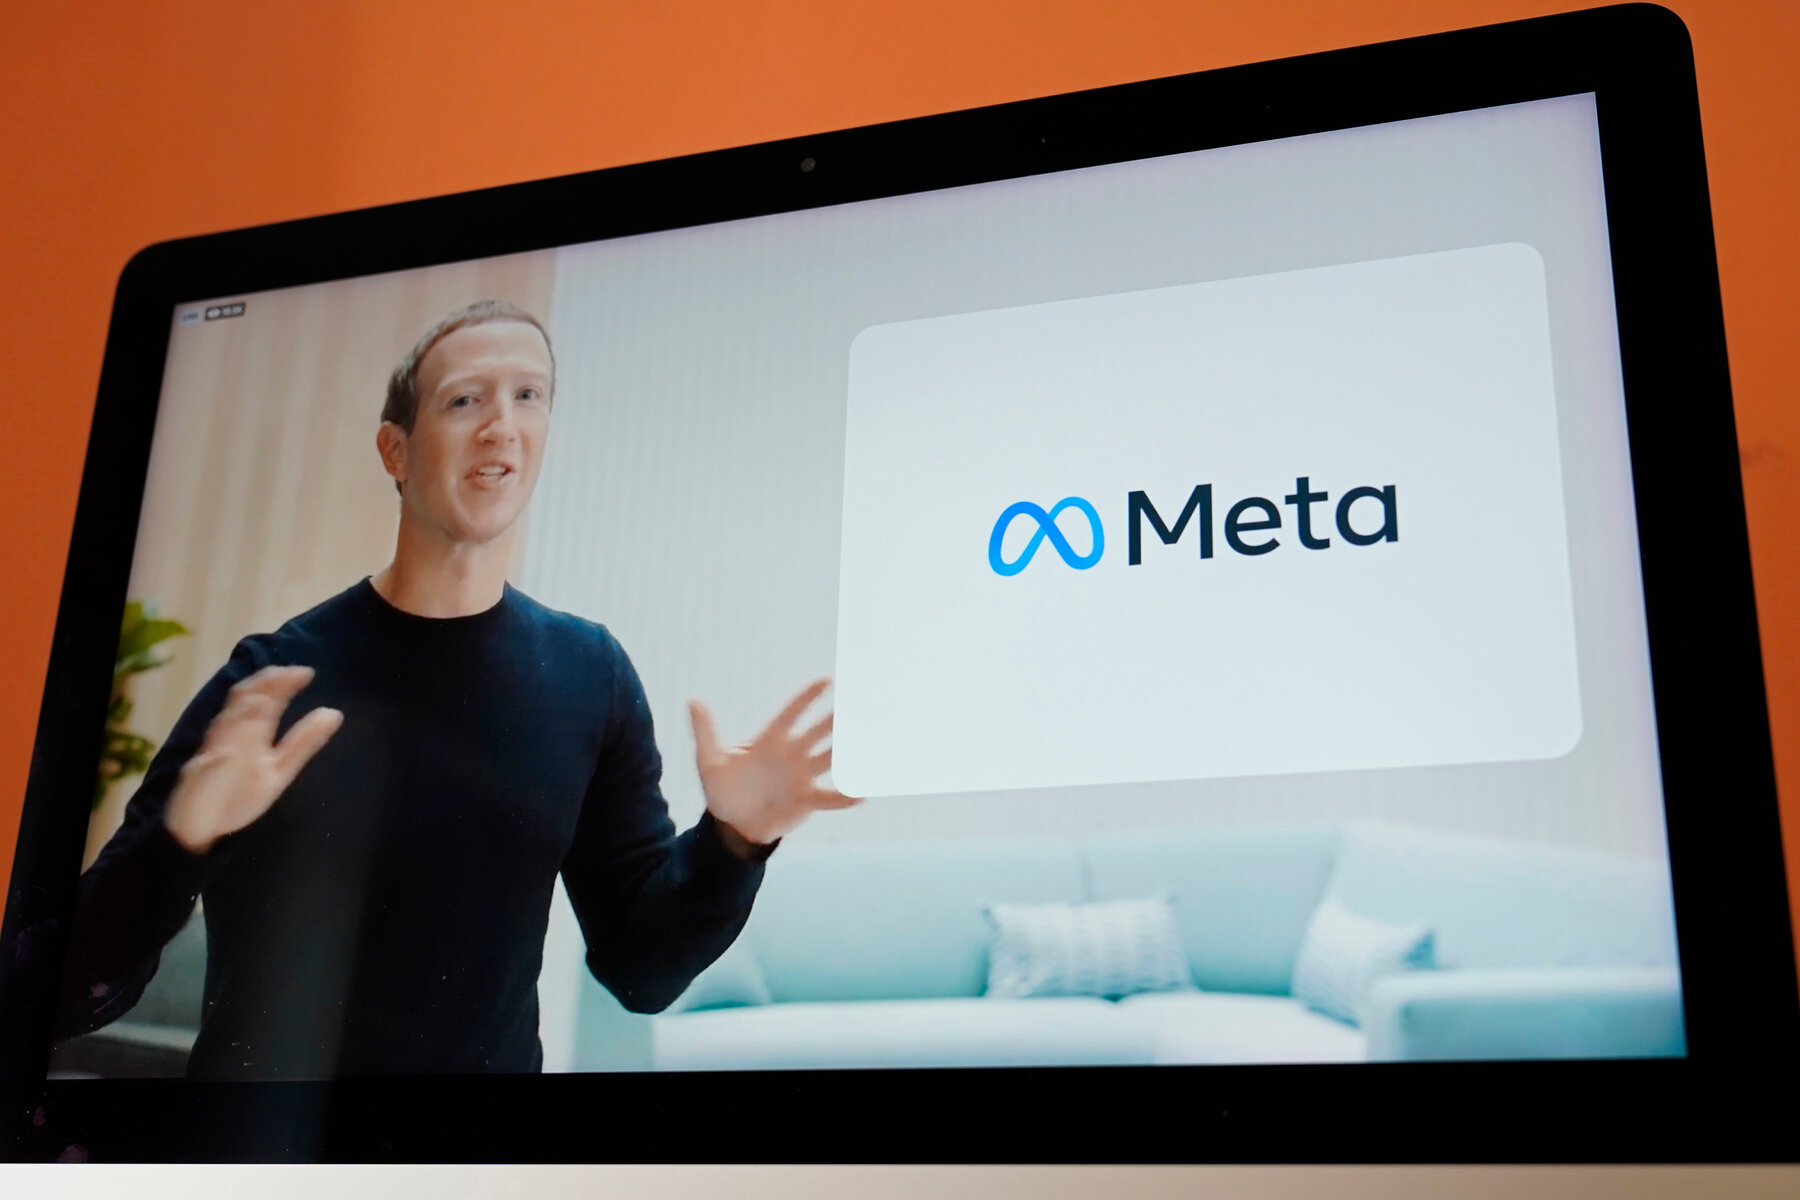 تغییر نام فیسبوک به متا (meta) باعث شده کاربران در شبکه های اجتماعی به اشکال مختلف به تمسخر مارک زاکربرگ و این تصمیم بپردازند